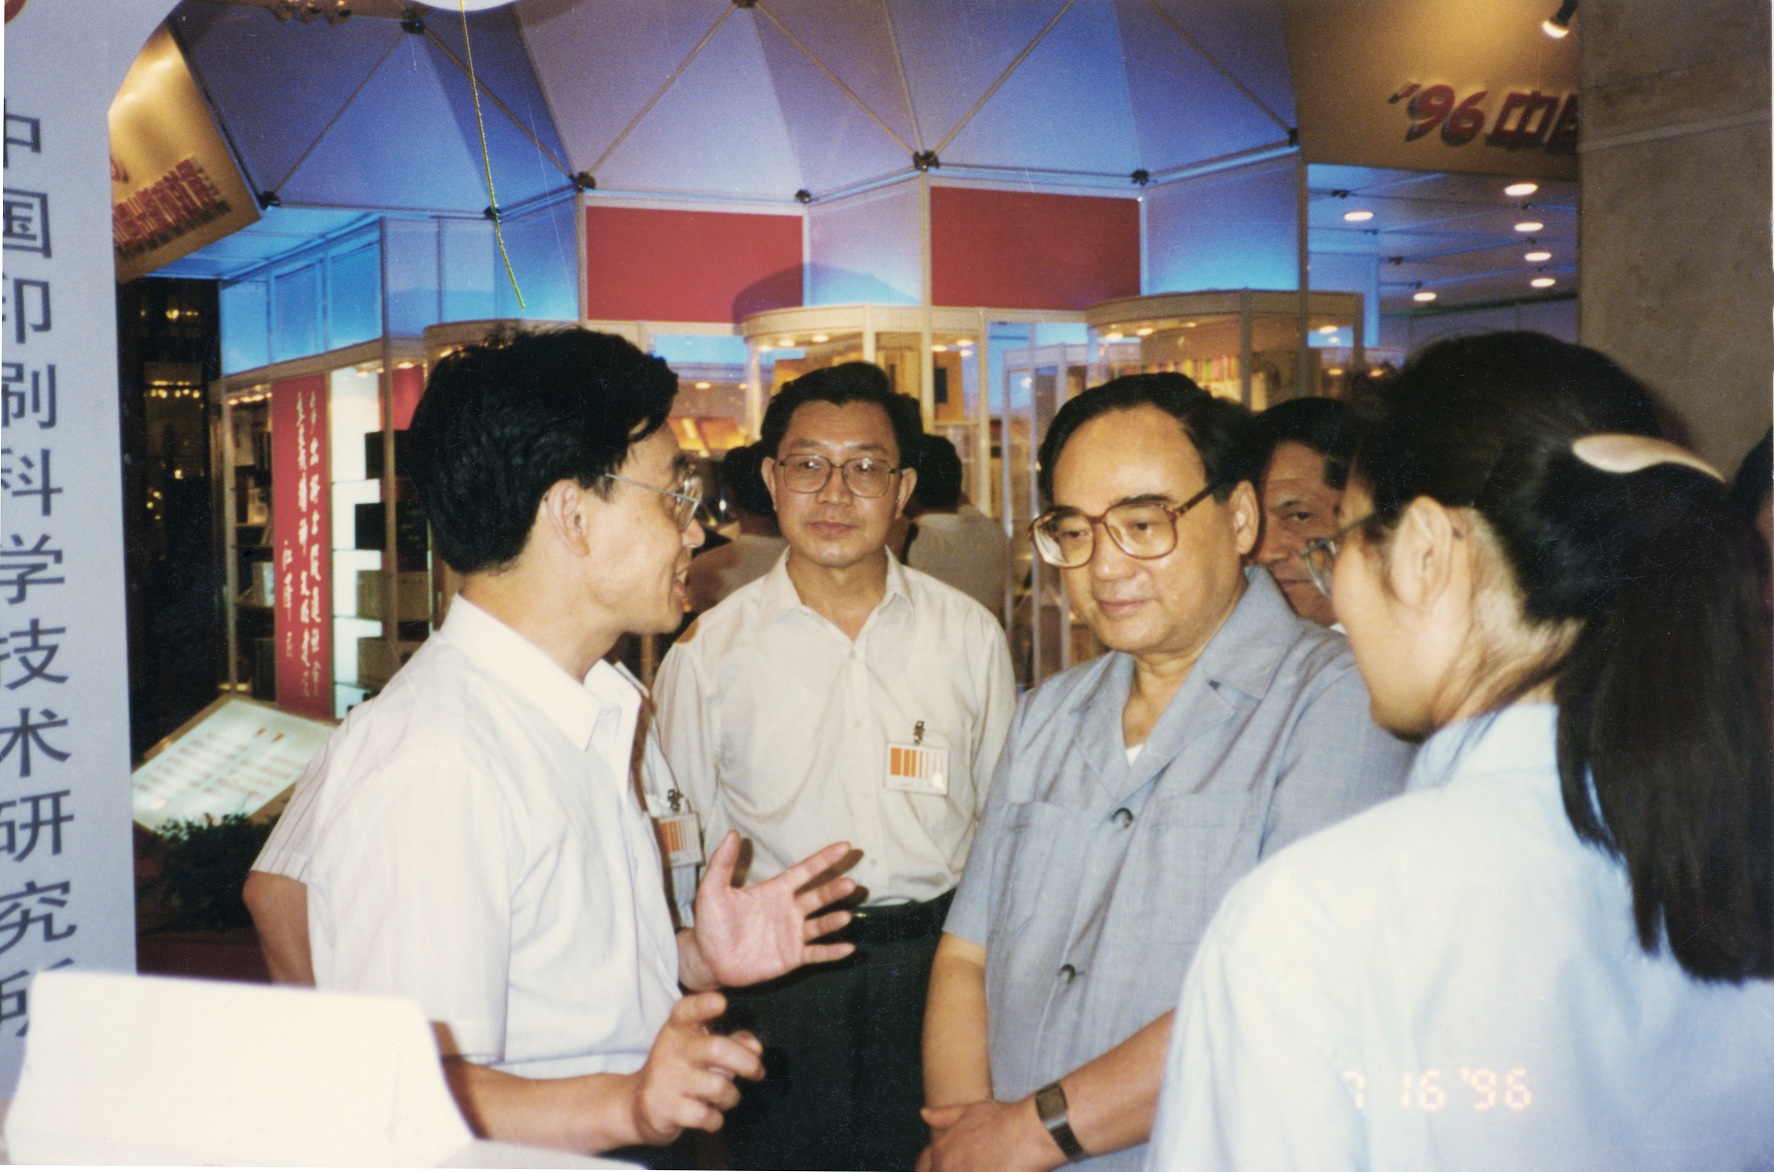 1996年7月，在中国出版成就展上，中宣部部长丁关根同志来到中国印刷科学技术研究所展位，询问科研情况及慰问科研人员.jpg